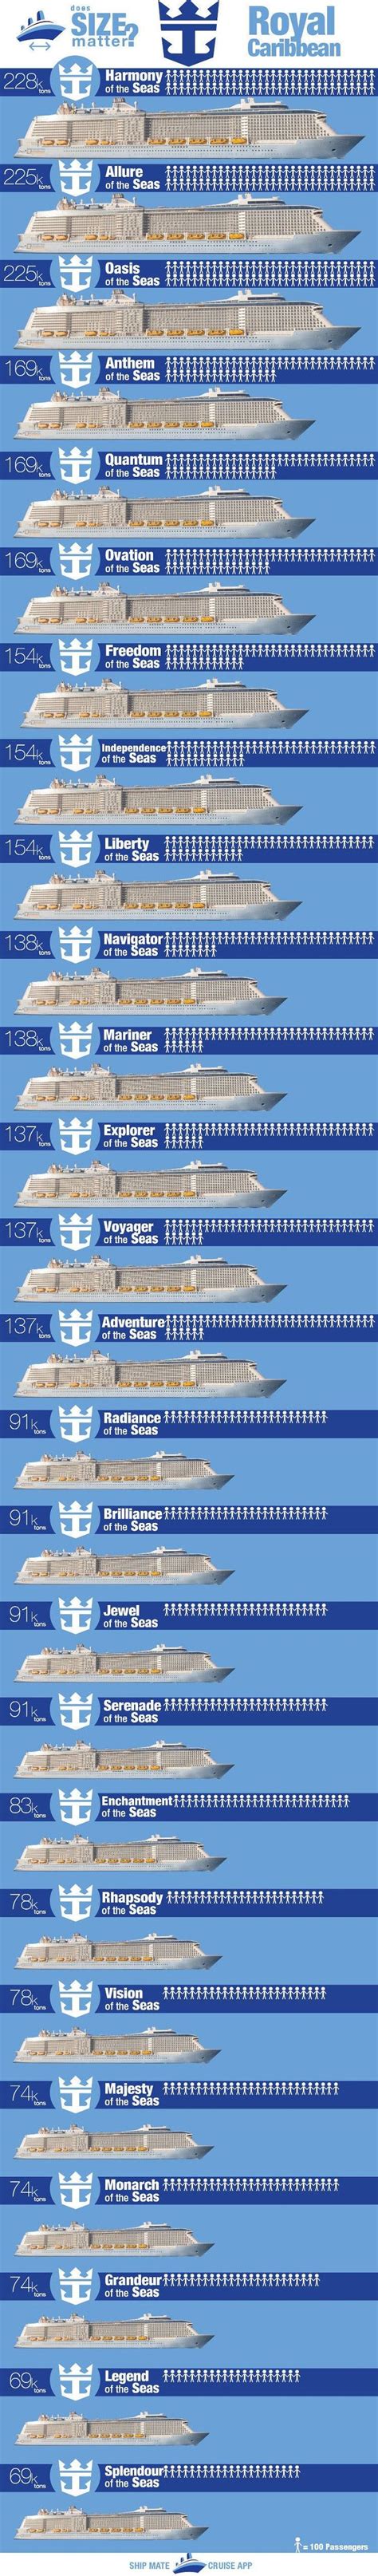 Royal Caribbean Ships By Size Royal Caribbean Royal Caribbean Ships